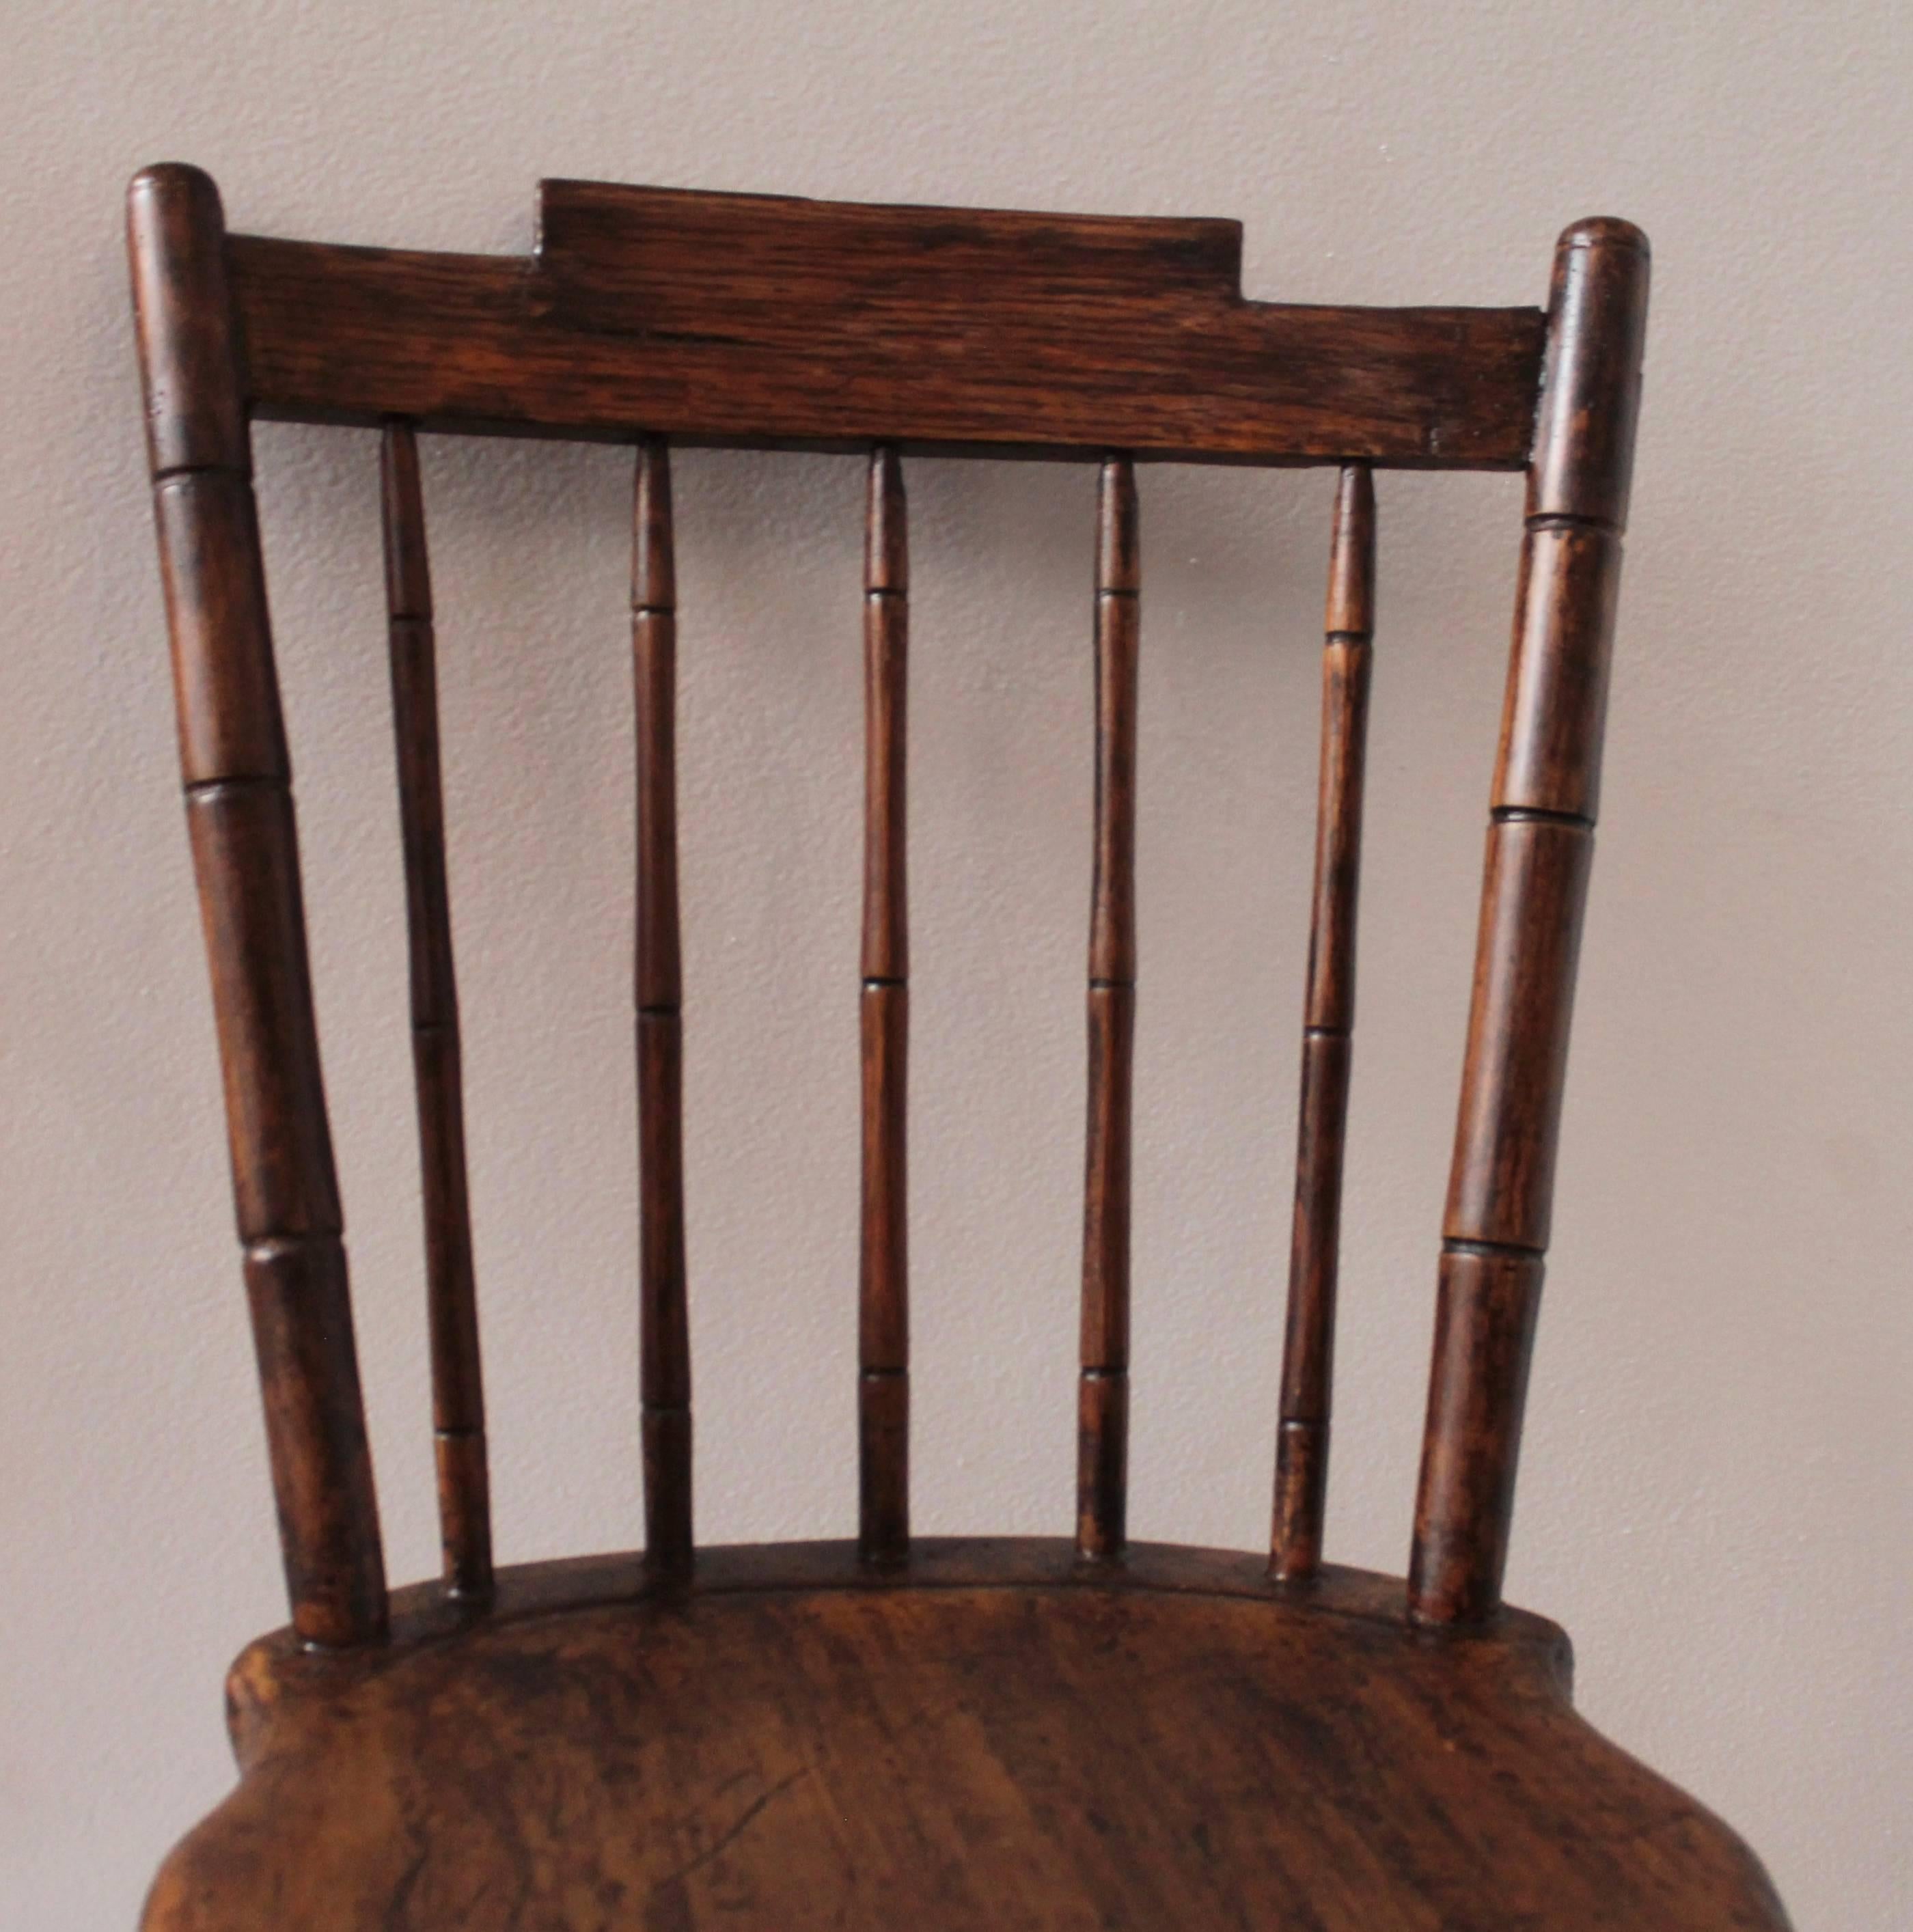 Chaise Windsor d'enfant peinte du début du XIXe siècle en bon état. La chaise a une surface peinte de deuxième génération.